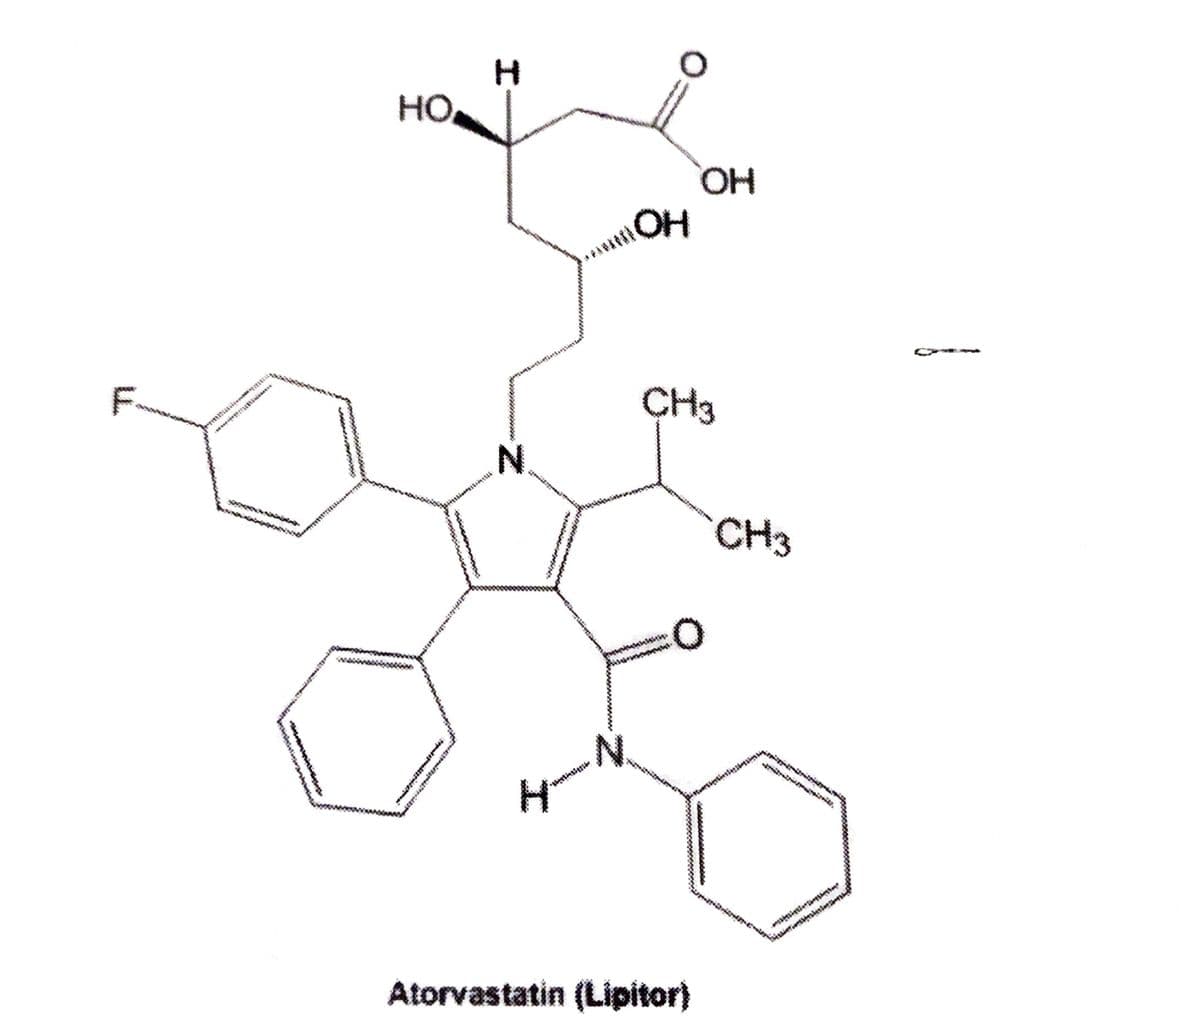 HO
HO,
OH
F-
CH3
N.
CH3
N.
Atorvastatin (Lipitor)
